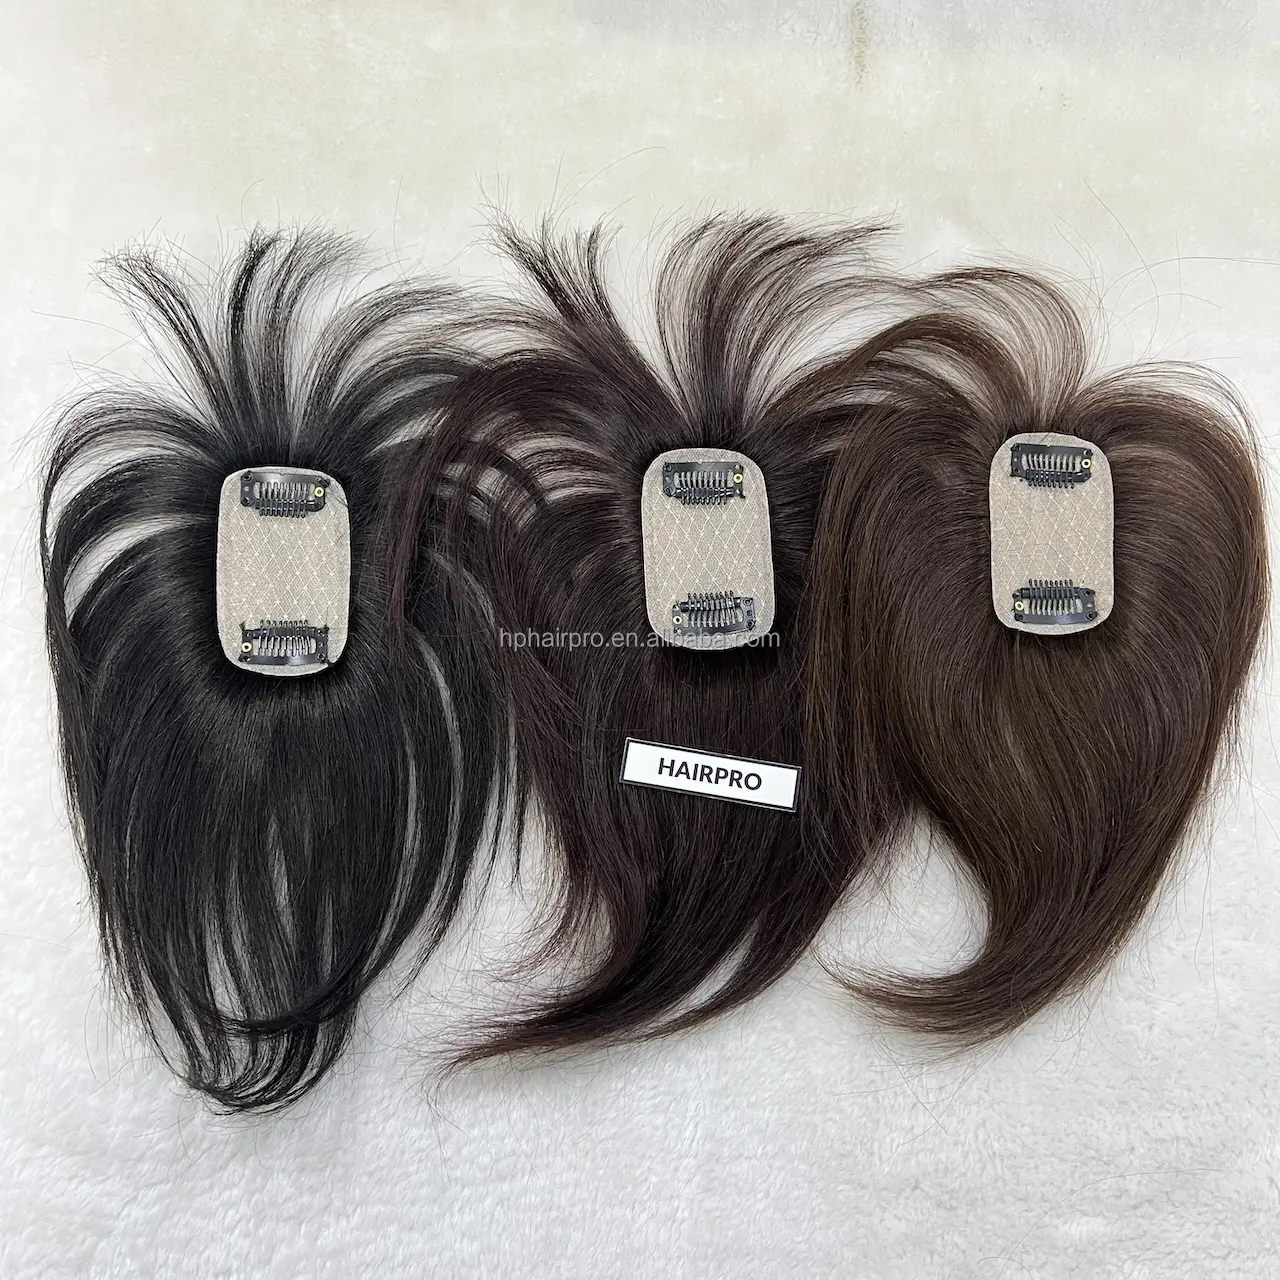 Ukuran kecil 5*8cm Topper rambut manusia untuk wanita masalah rambut rontok populer harga puncak rambut manusia